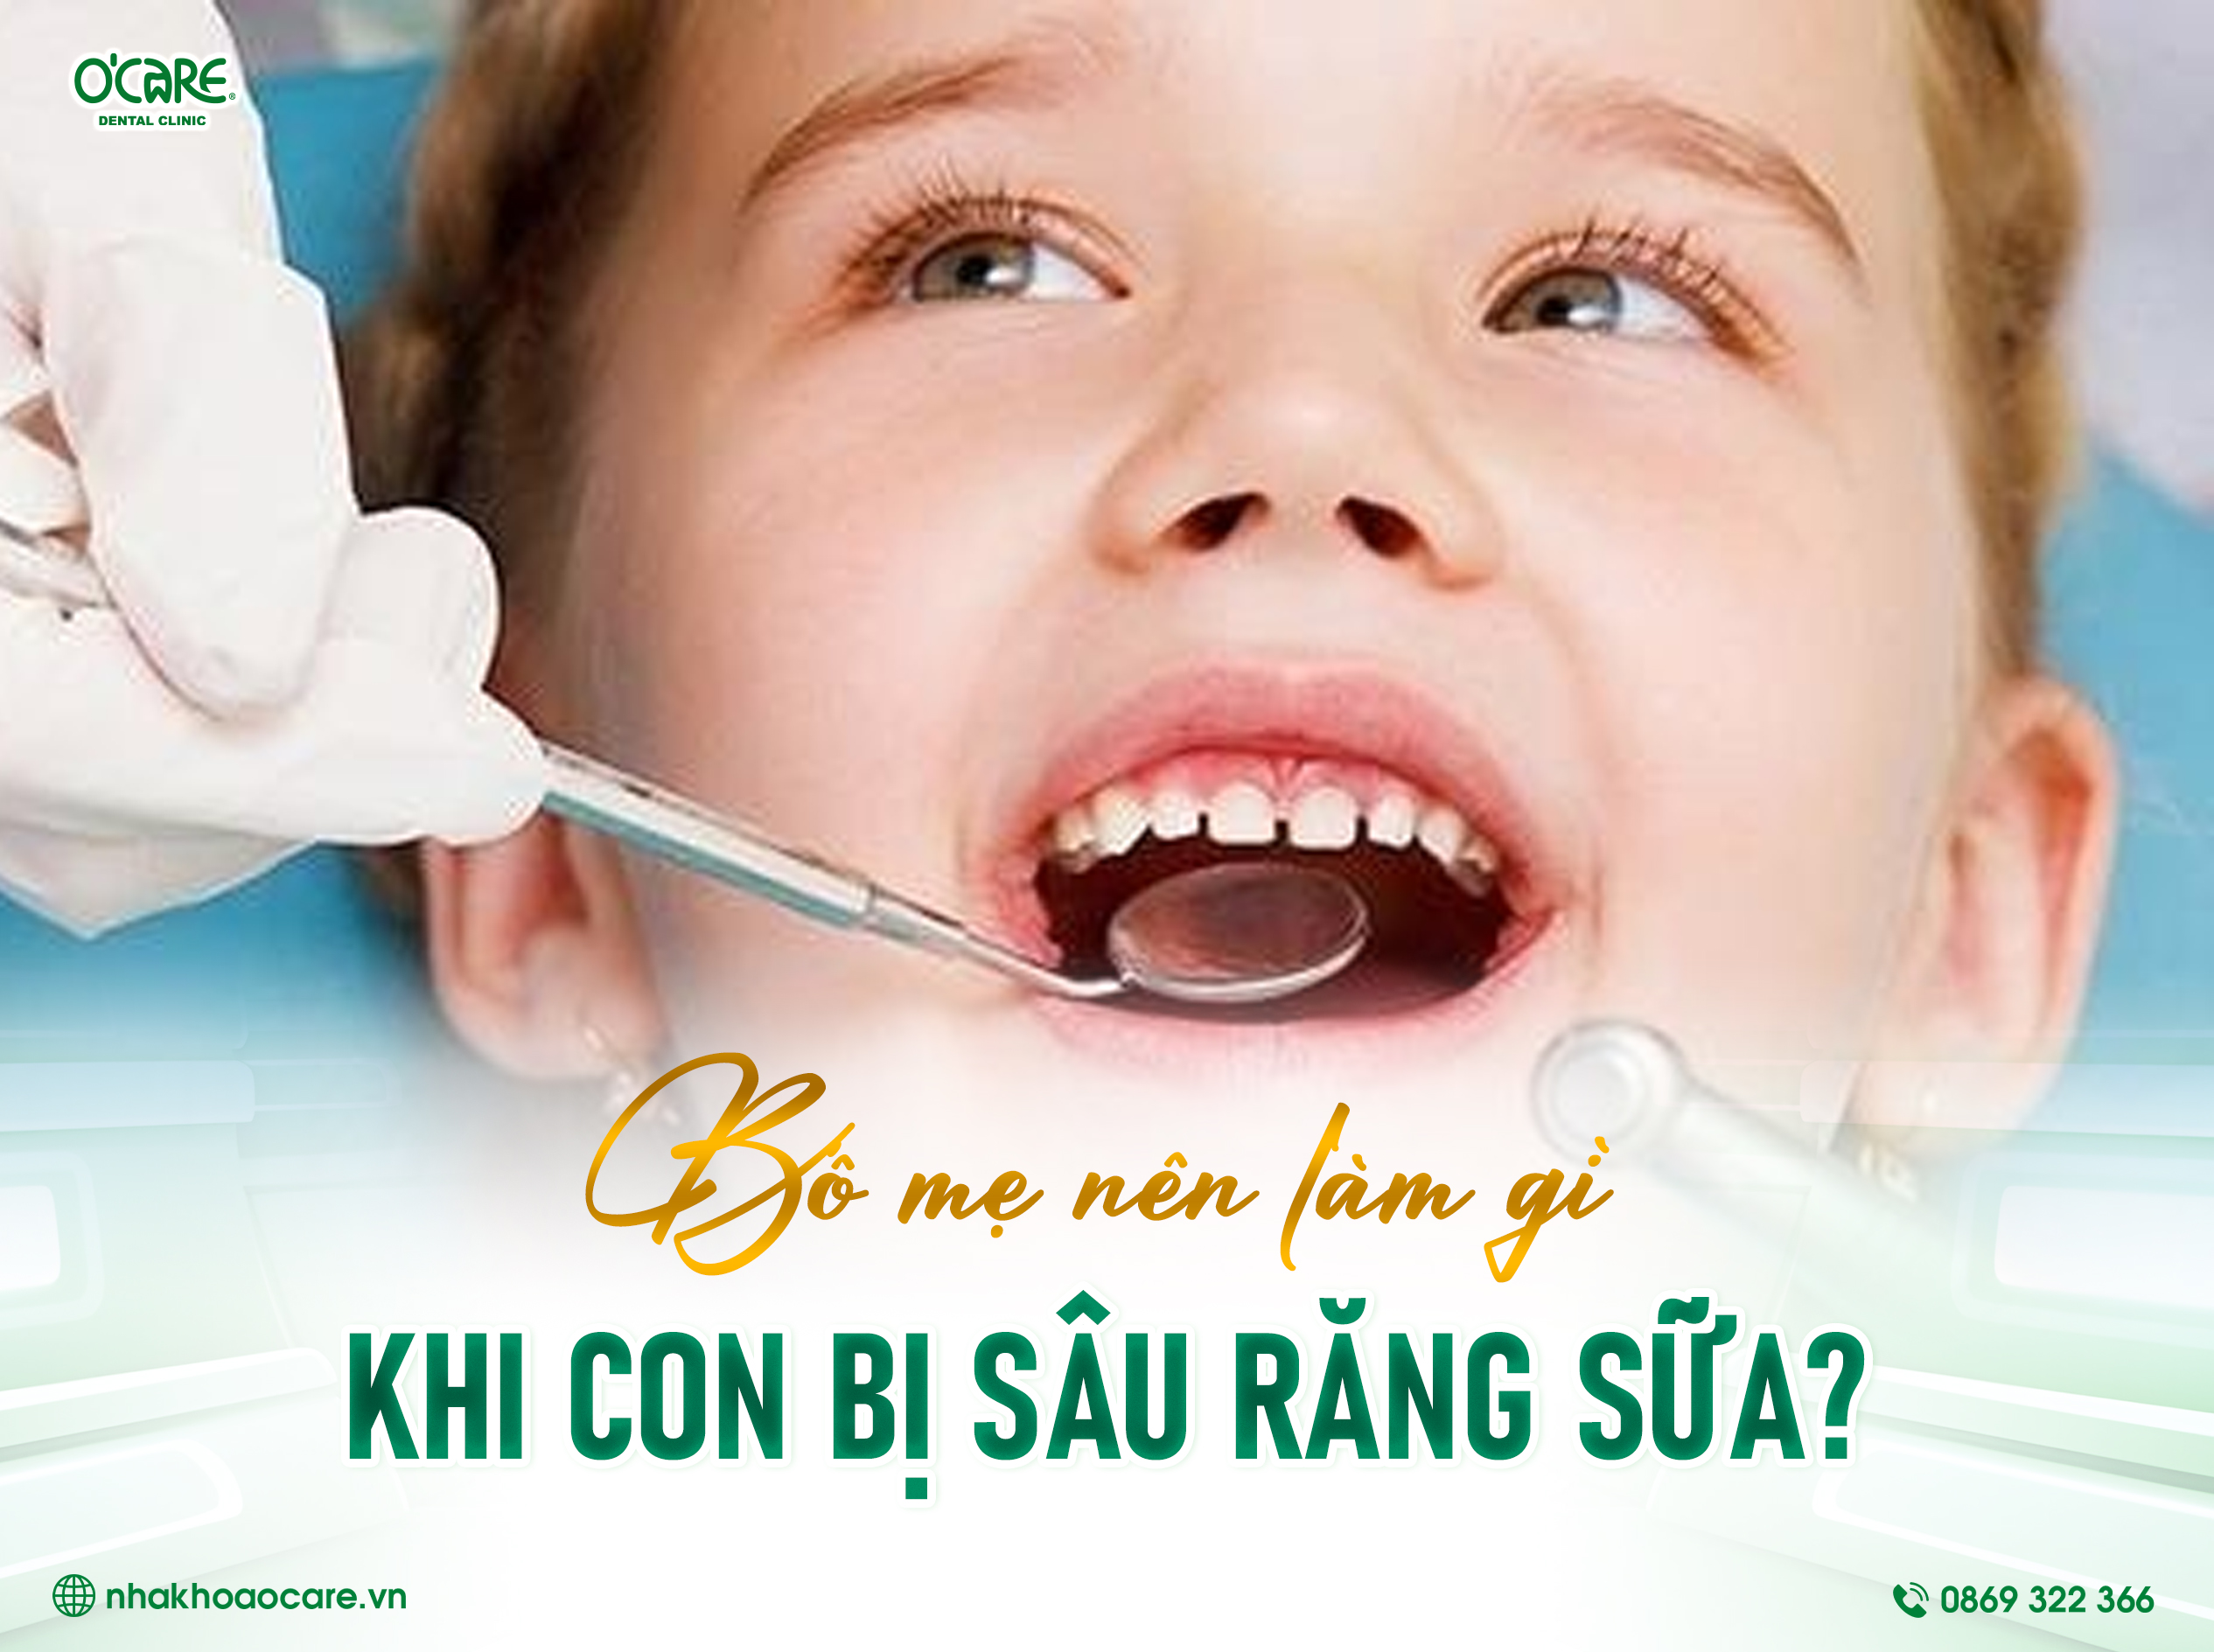 Bố mẹ nên làm gì khi con bị sâu răng sữa